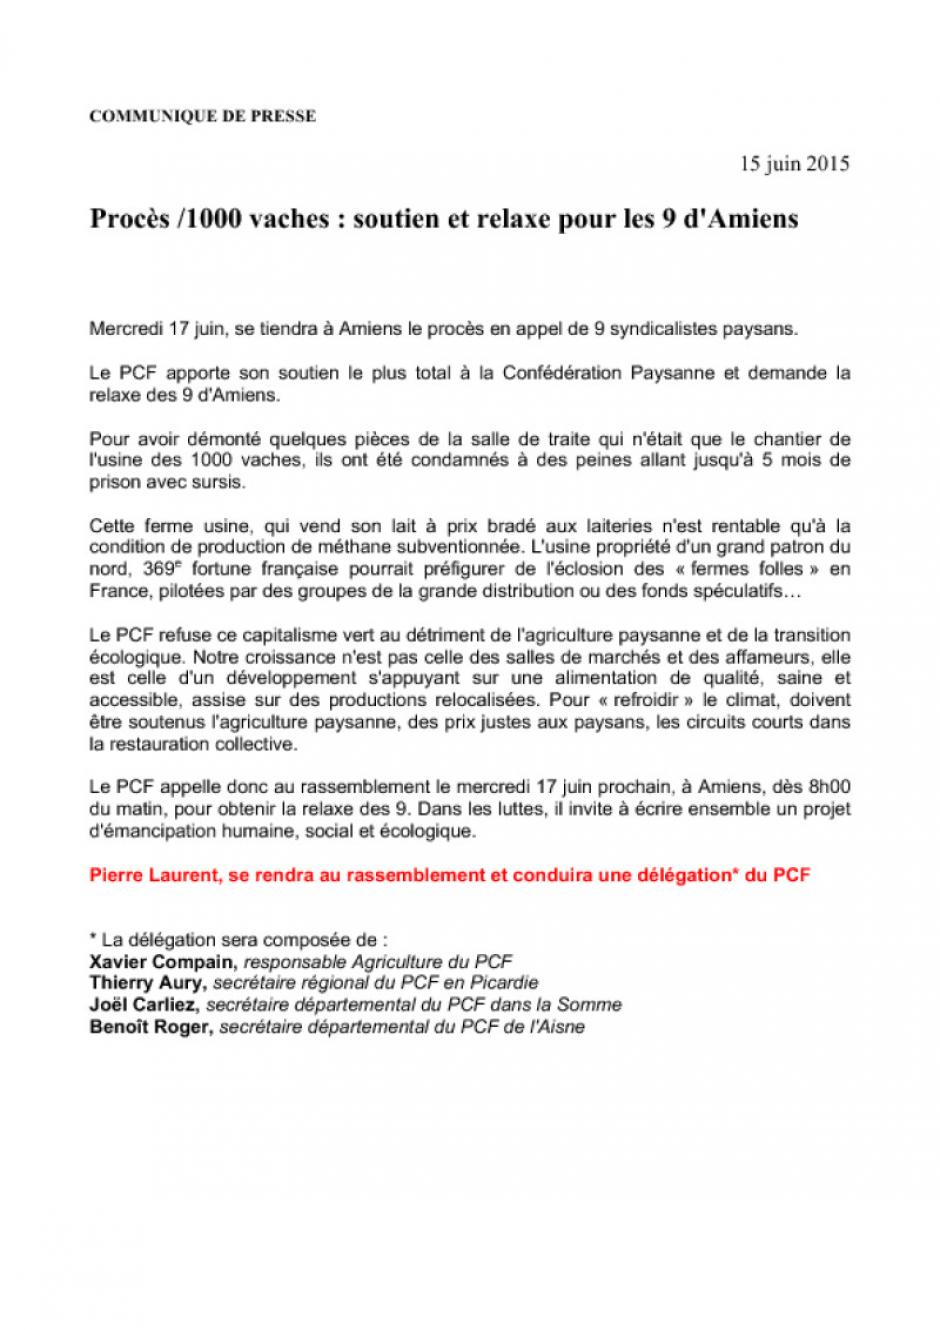 Soutien et relaxe pour les 9 d'Amiens - Communiqué de presse du PCF, 15 juin 2015